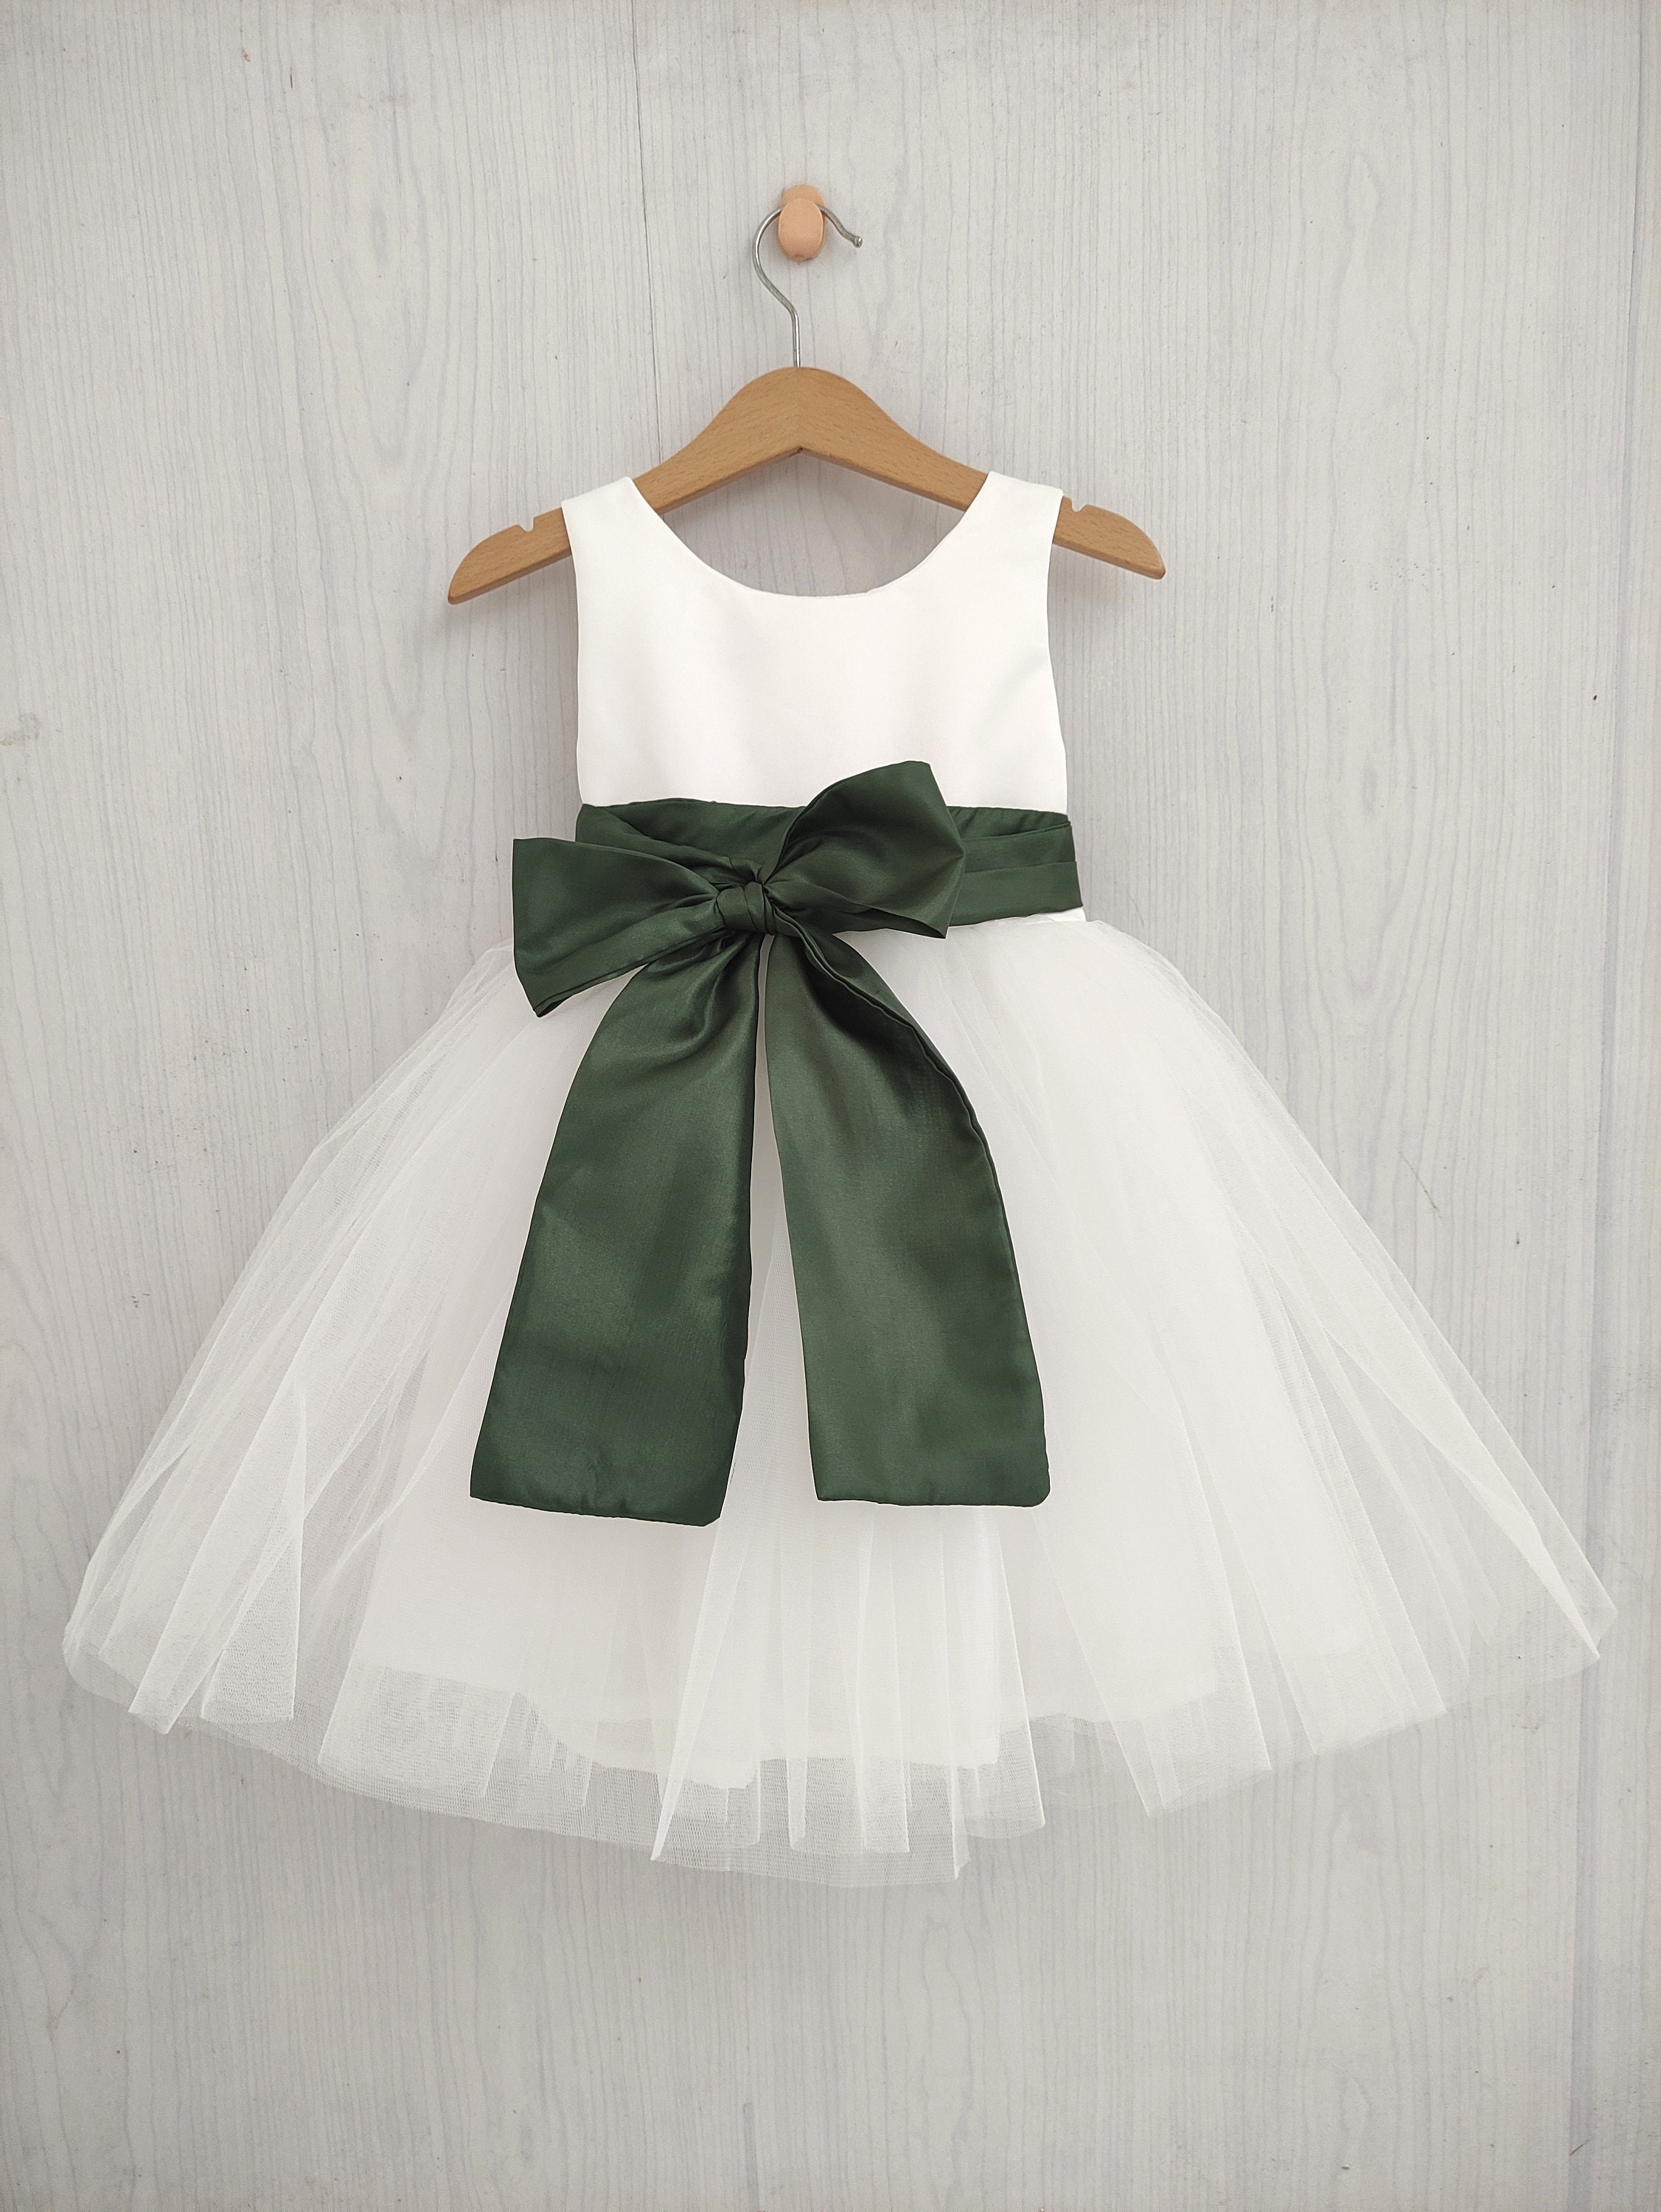 Sweet White Flower Girl Dresses with Green Sash